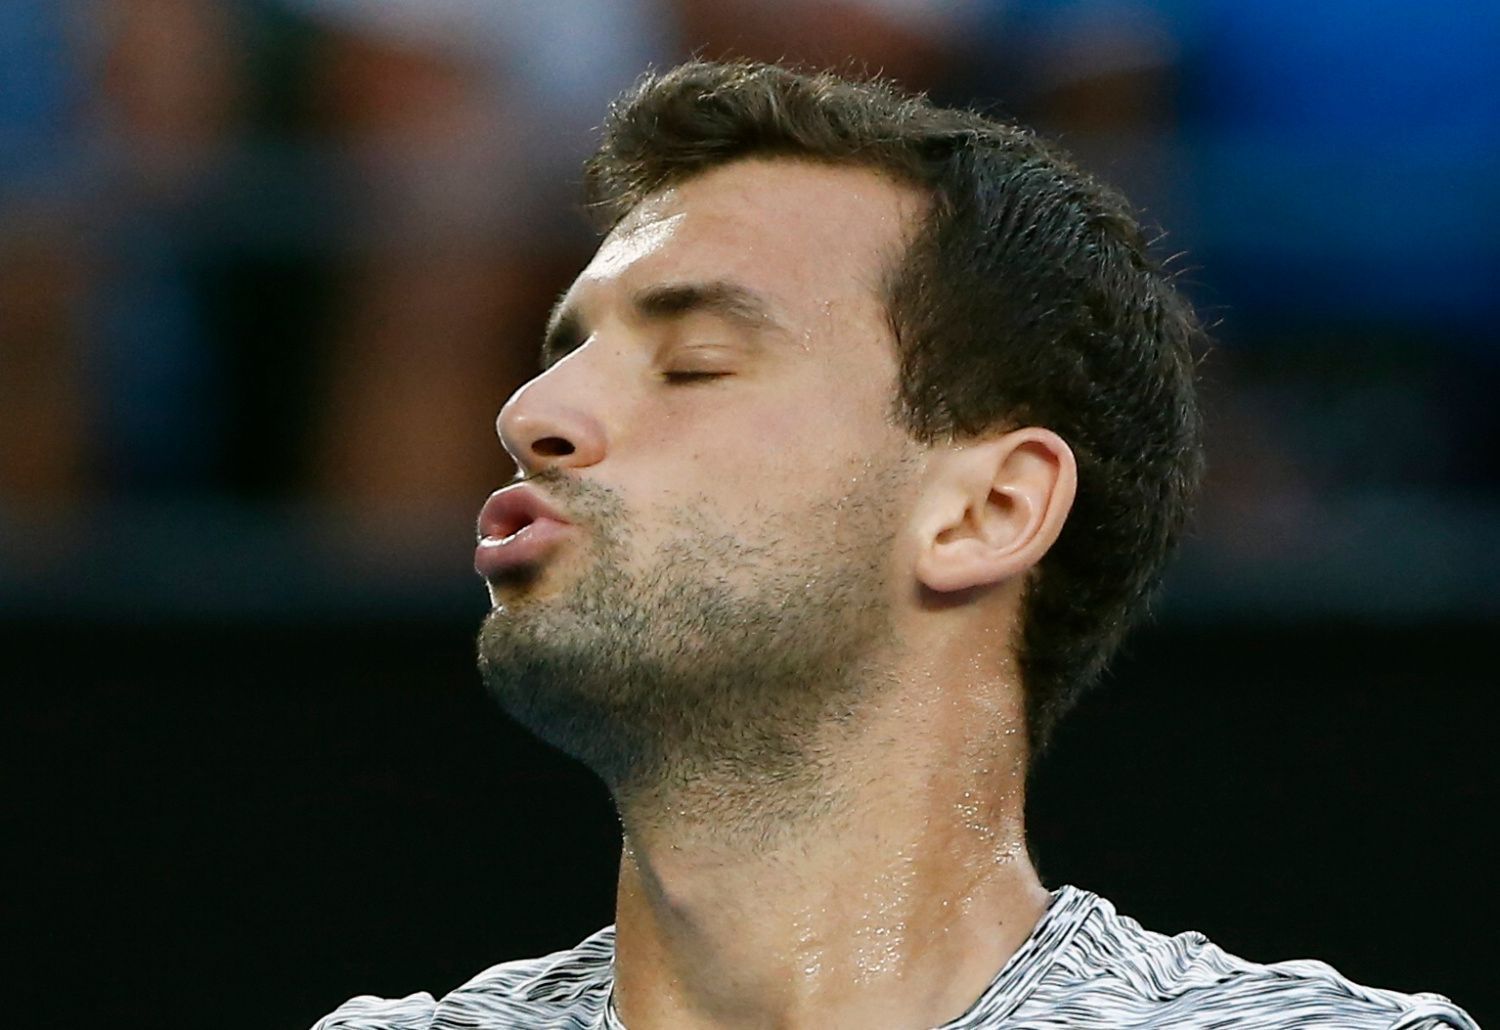 Grigor Dimitrov v semifinále Australian Open  2017